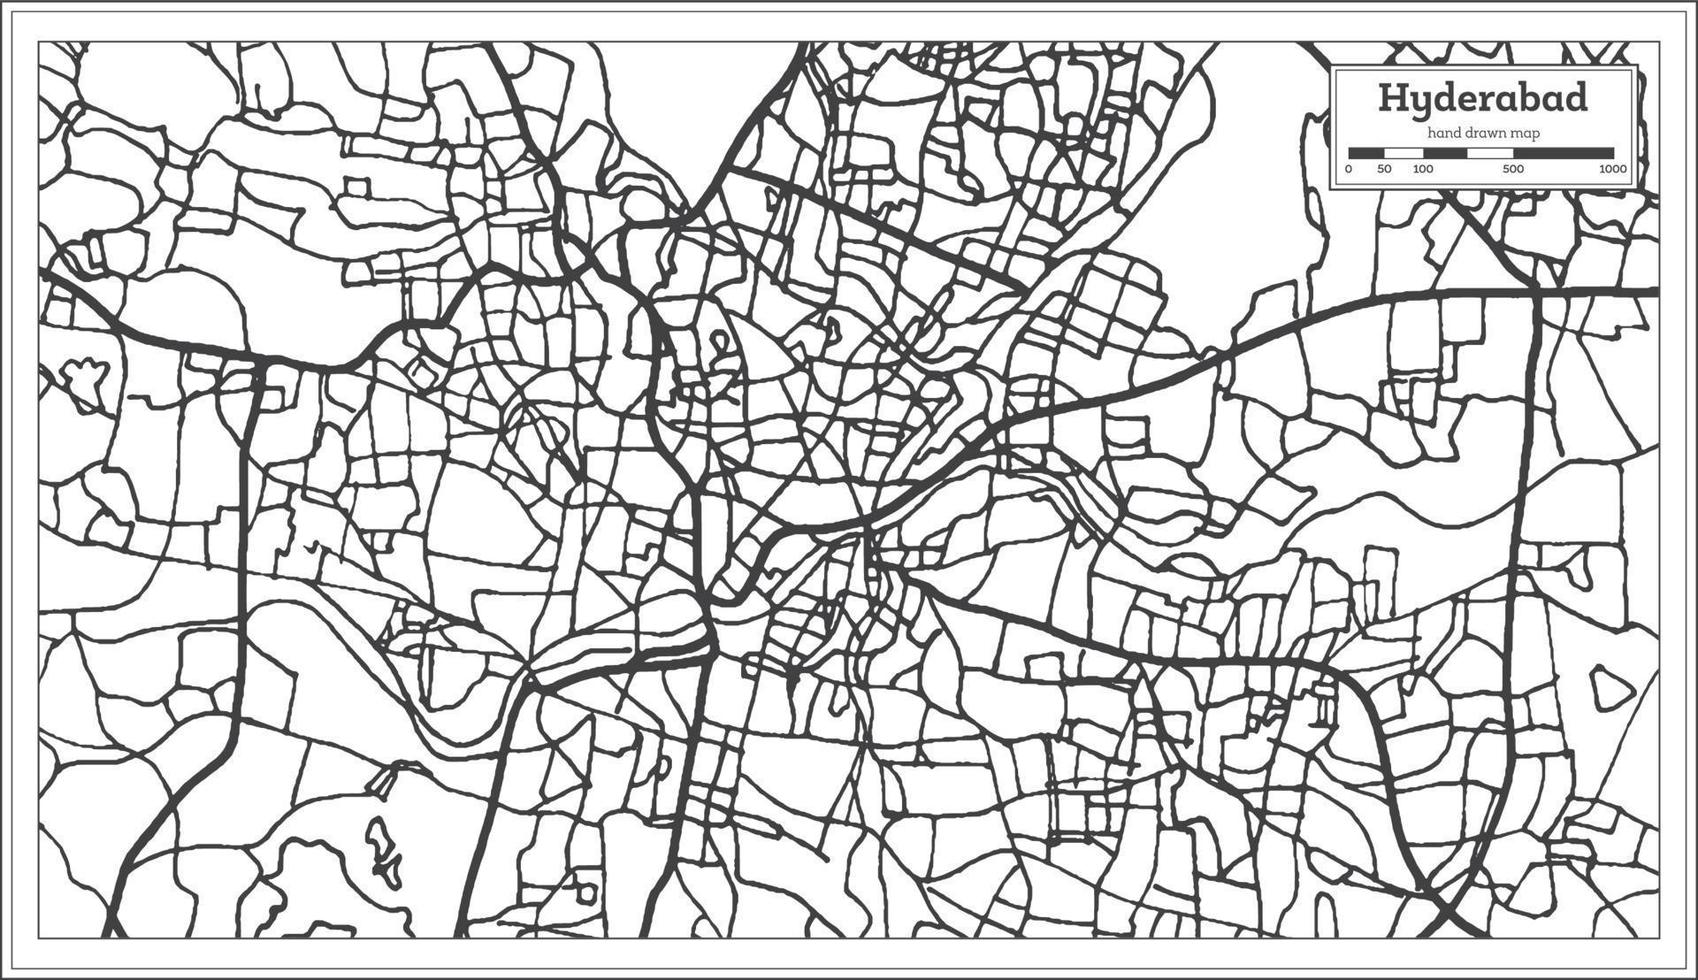 hyderabad Indien stad Karta i retro stil. översikt Karta. vektor